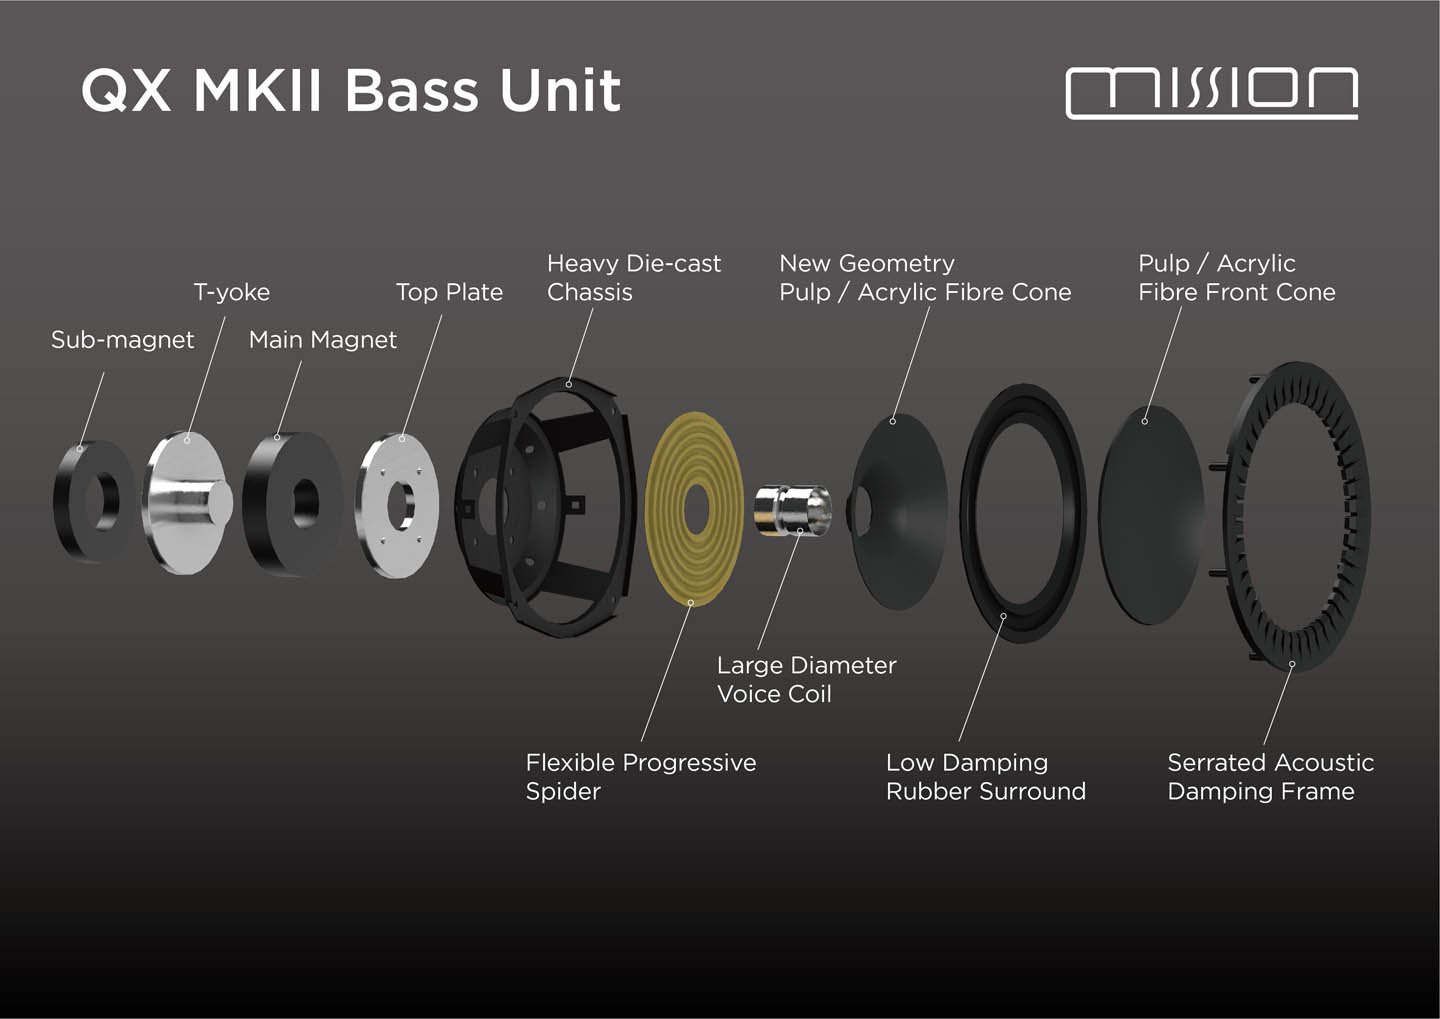 Mission QX MKII Bass